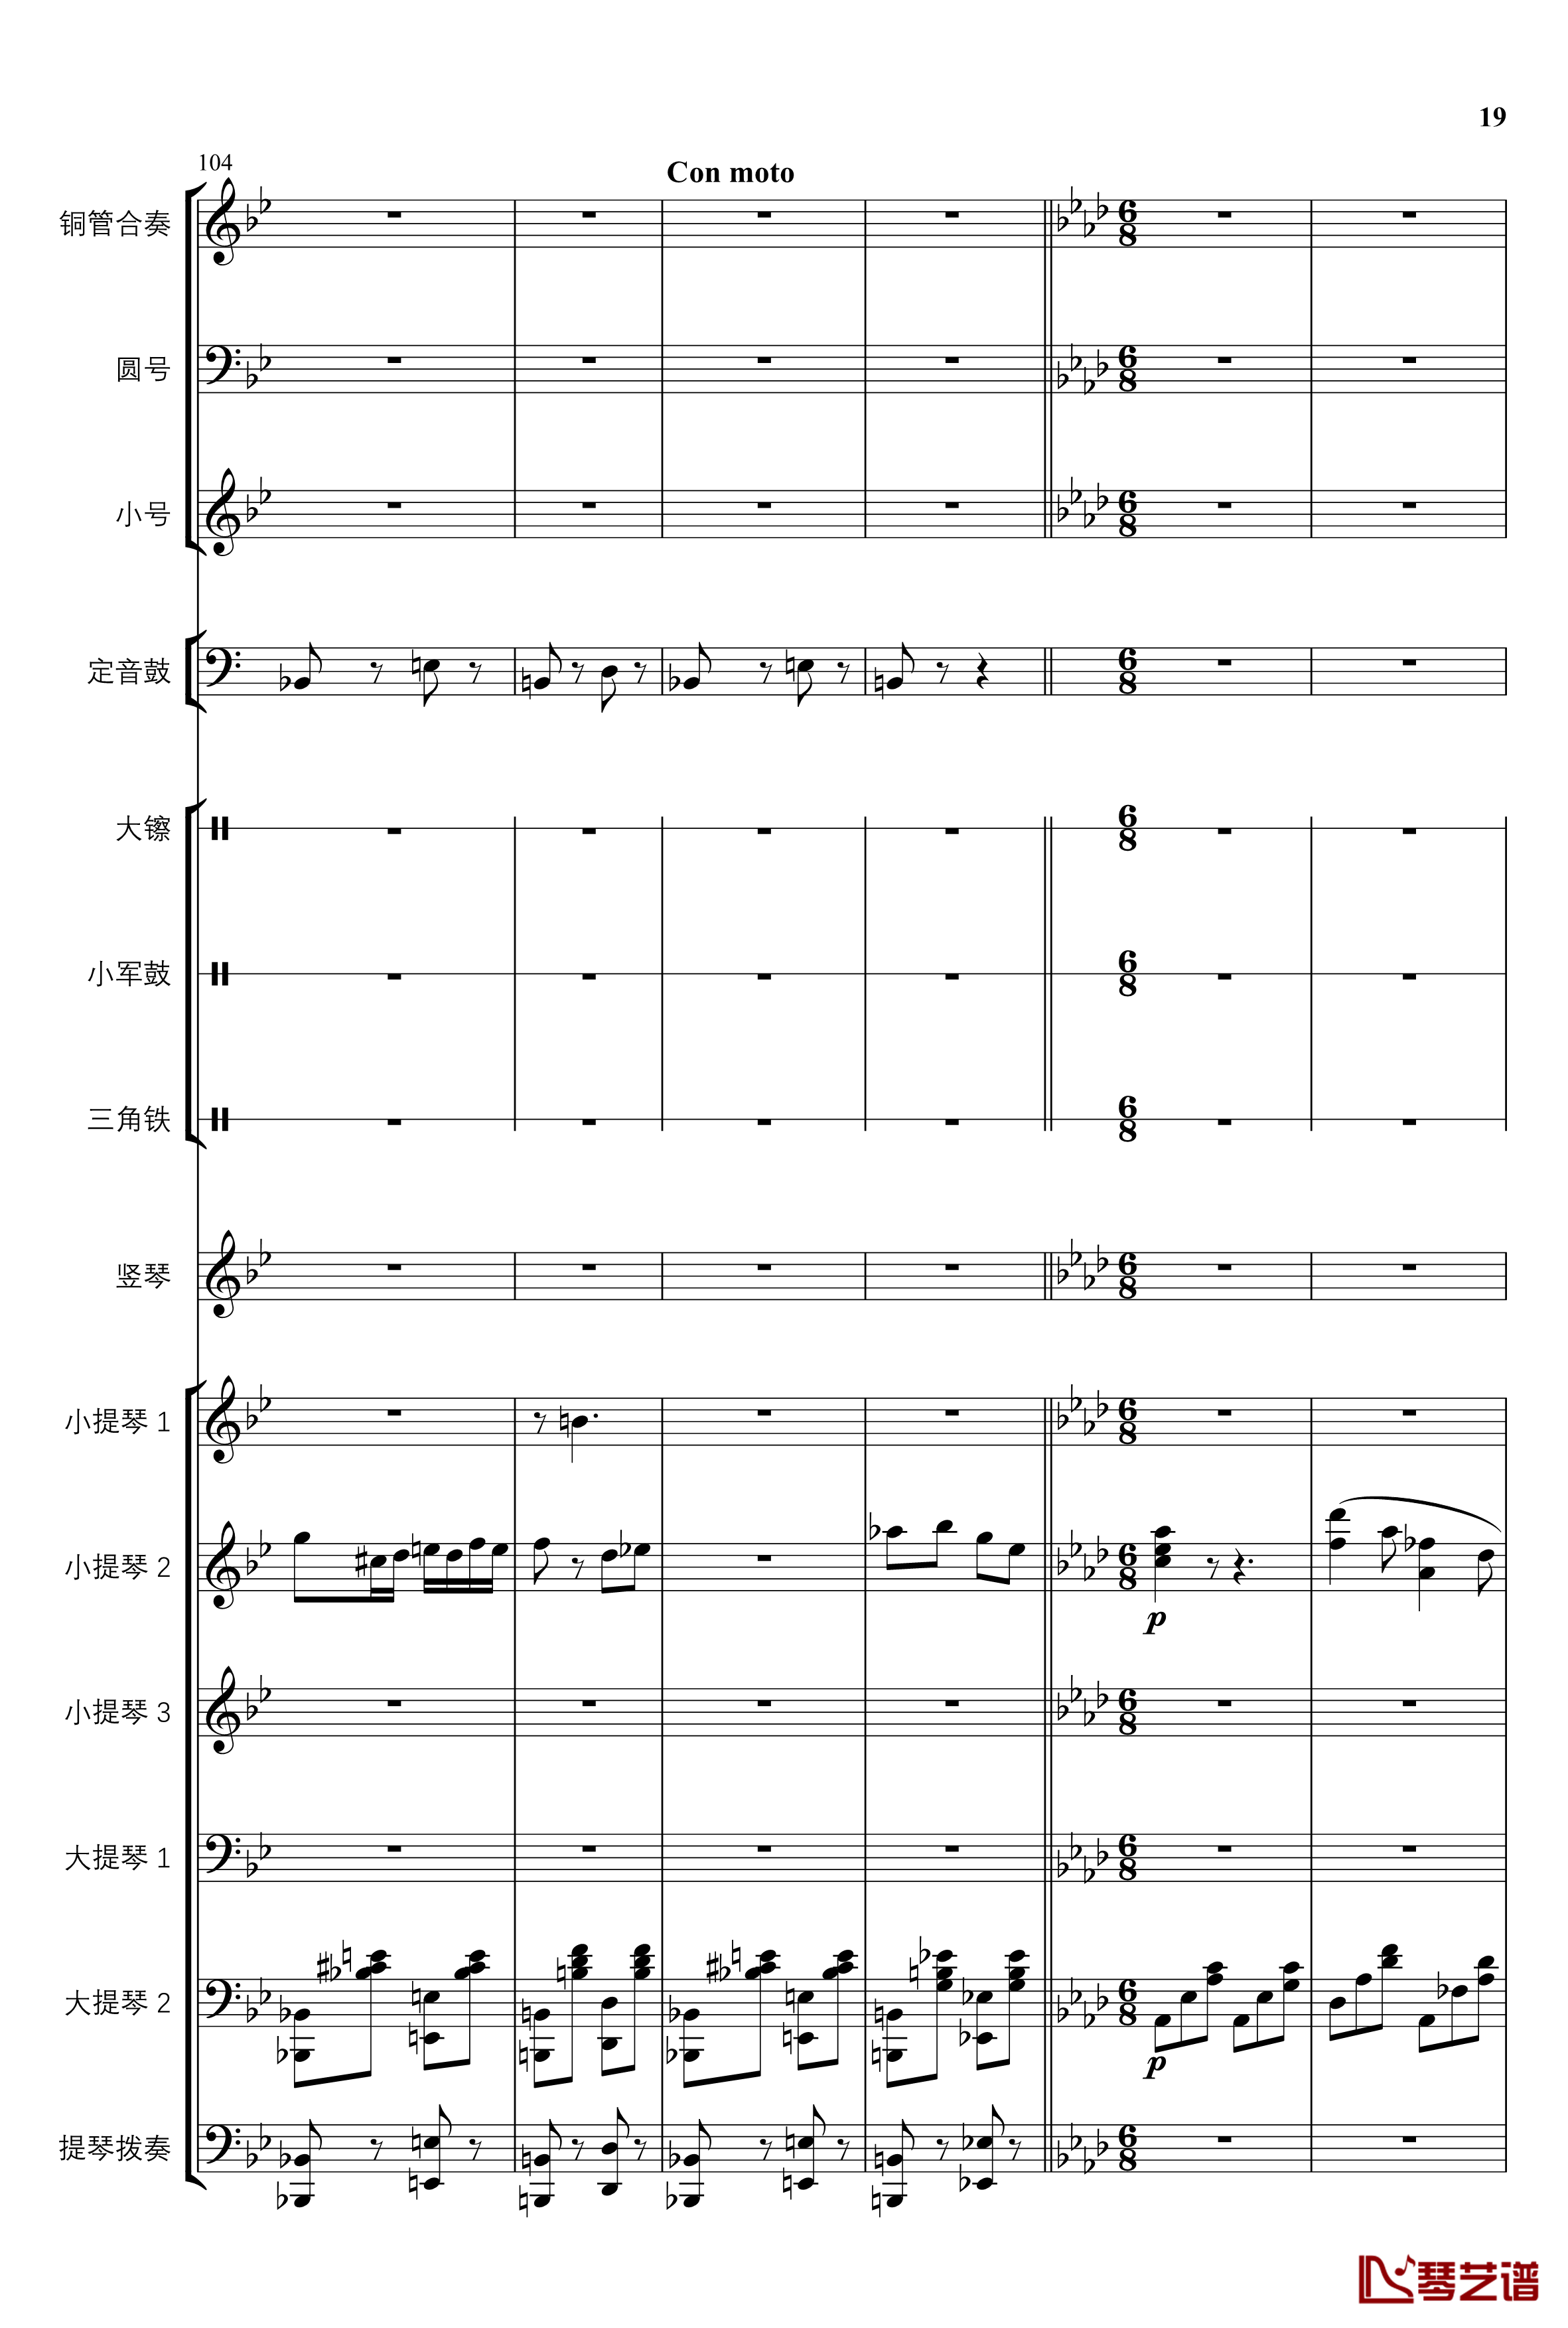 2013考试周的叙事曲钢琴谱-管弦乐重编曲版-江畔新绿19